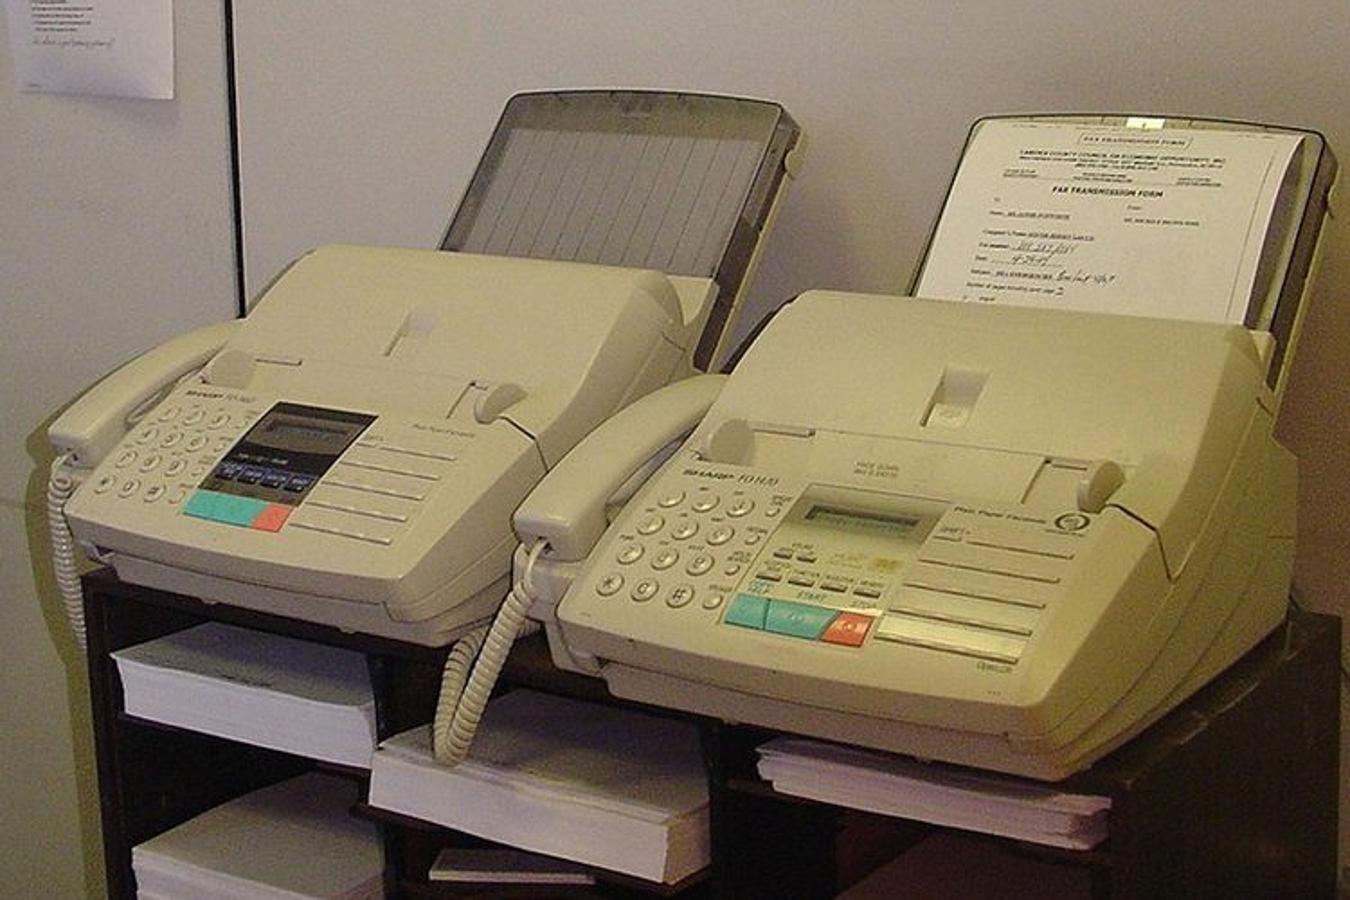 Fax. Inicialmente, el fax se usaba exclusivamente en el periodismo; pero su eficiencia y el afán de modernización hicieron que se integrase posteriormente a los negocios. El fax se utilizaba para enviar y recibir imágenes de todo tipo.